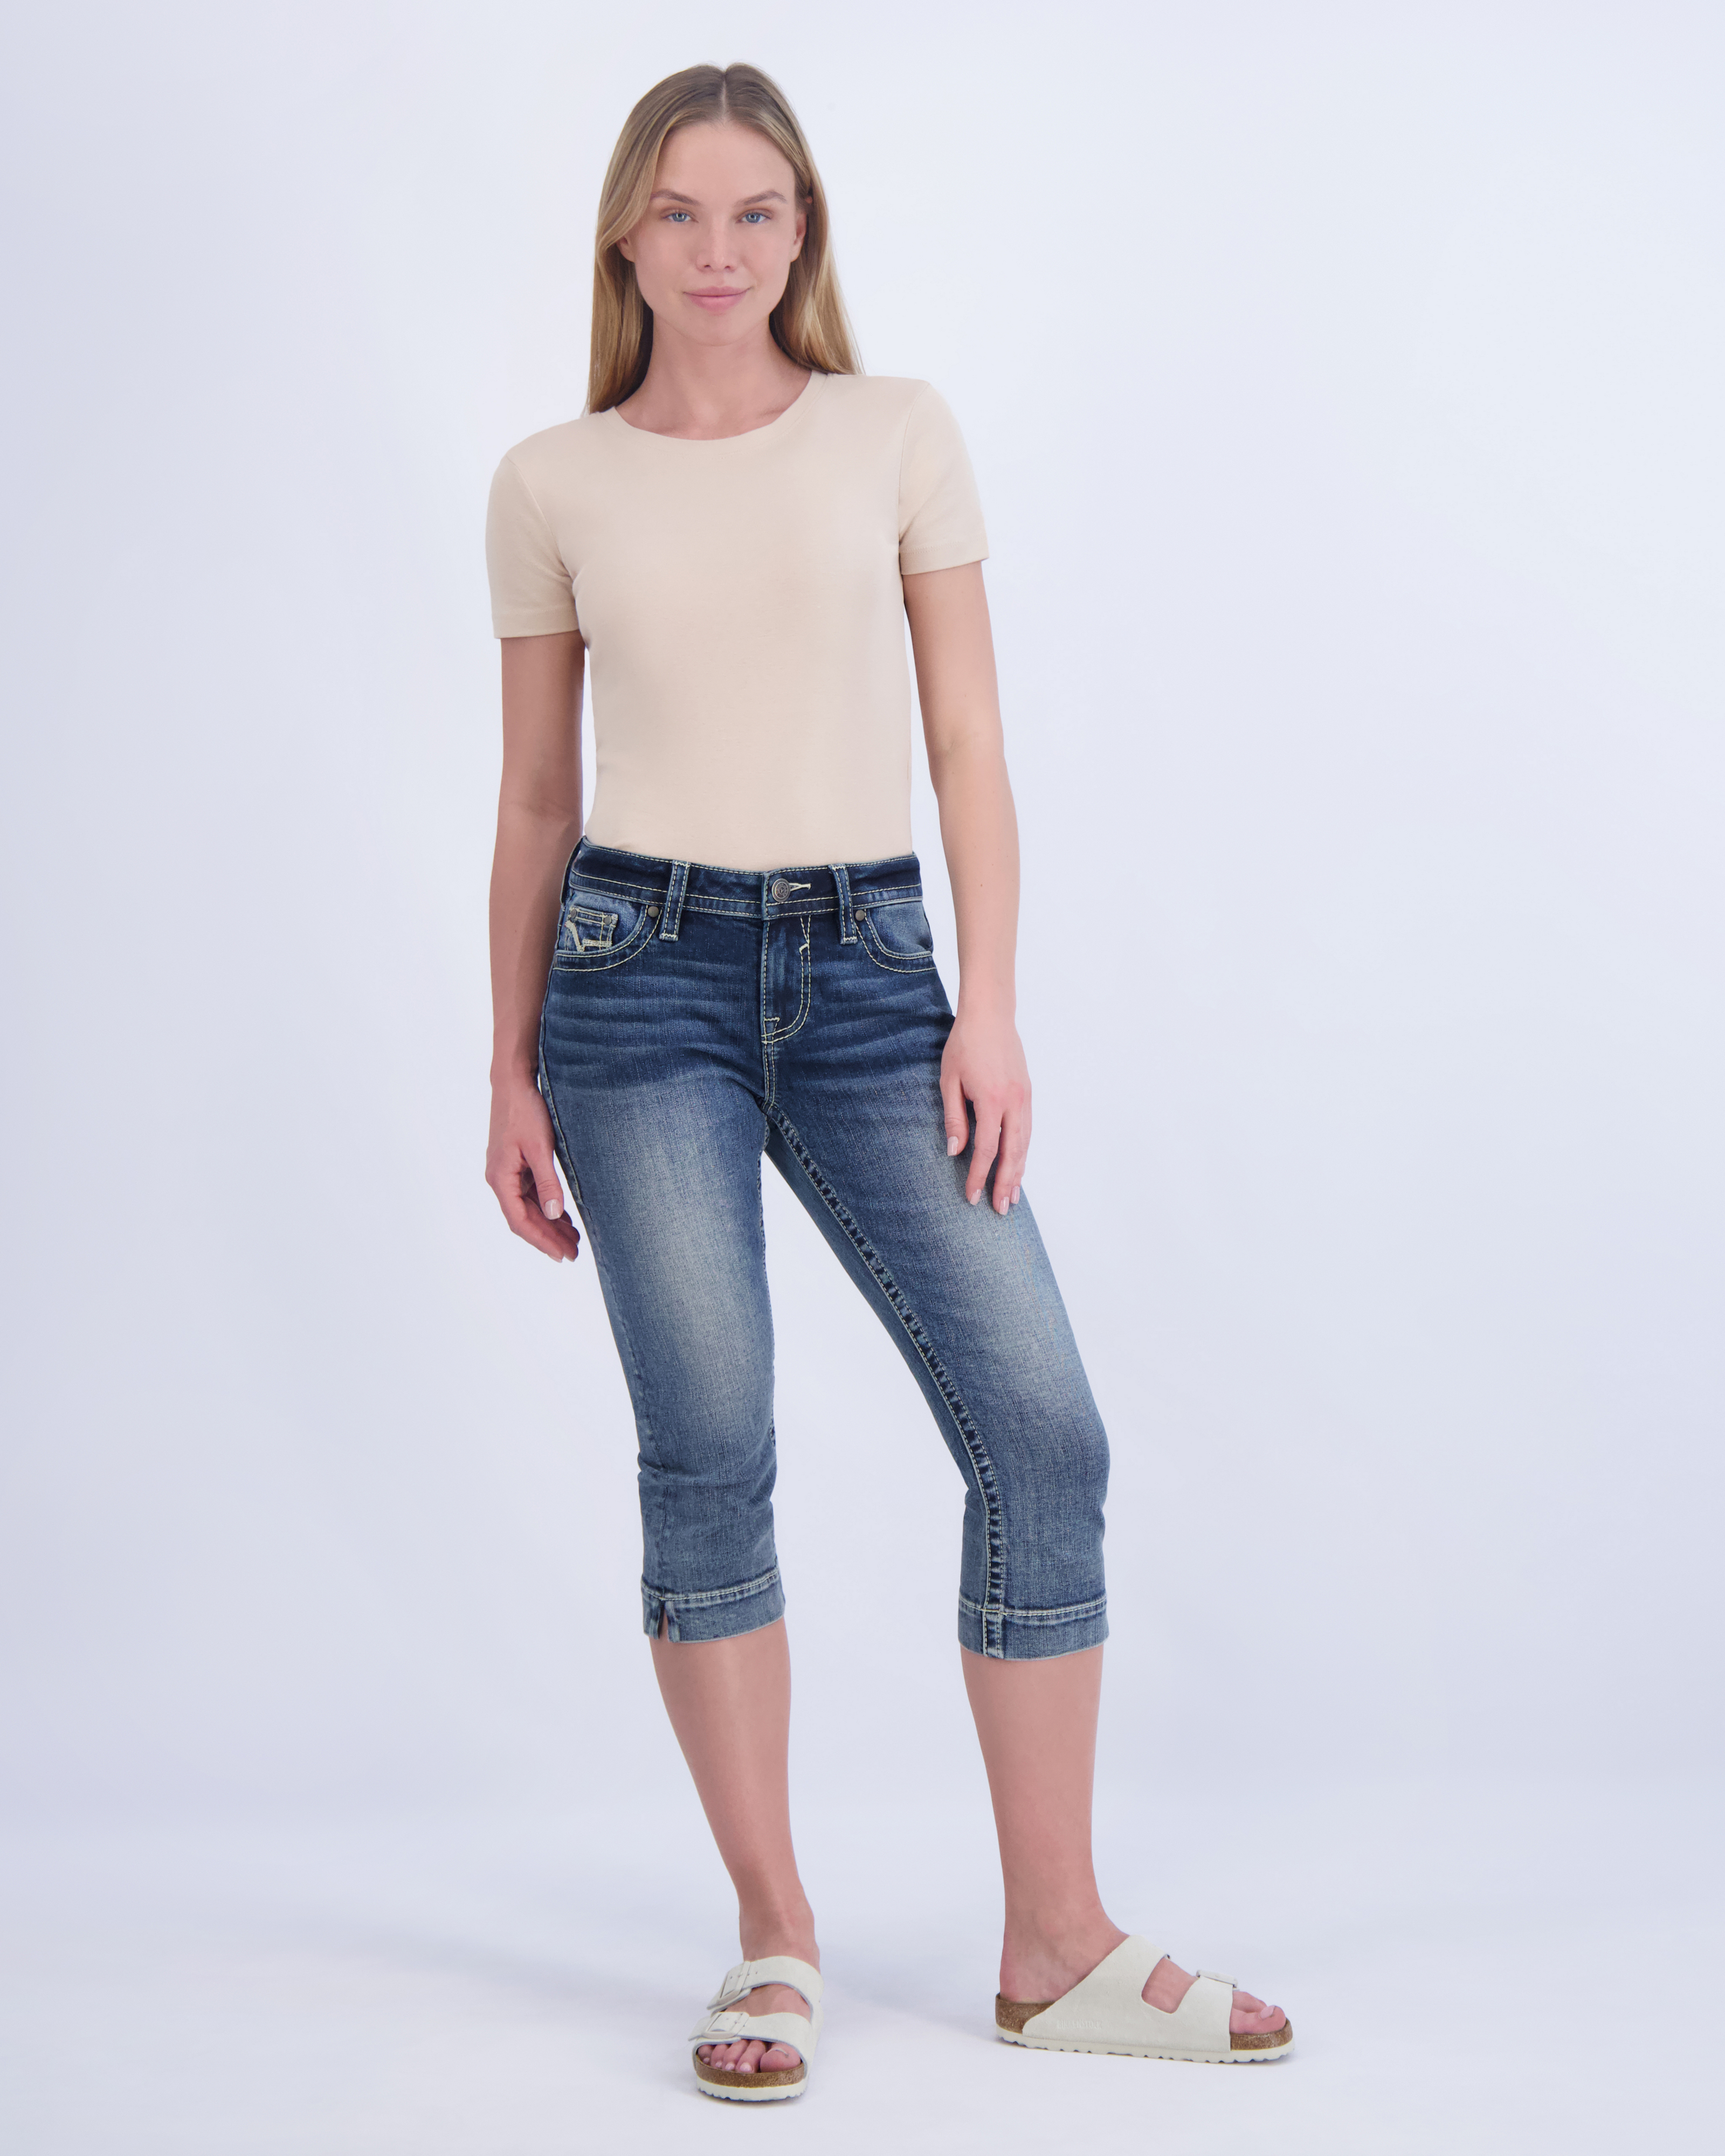 Women's Crop Pants & Jean Capris